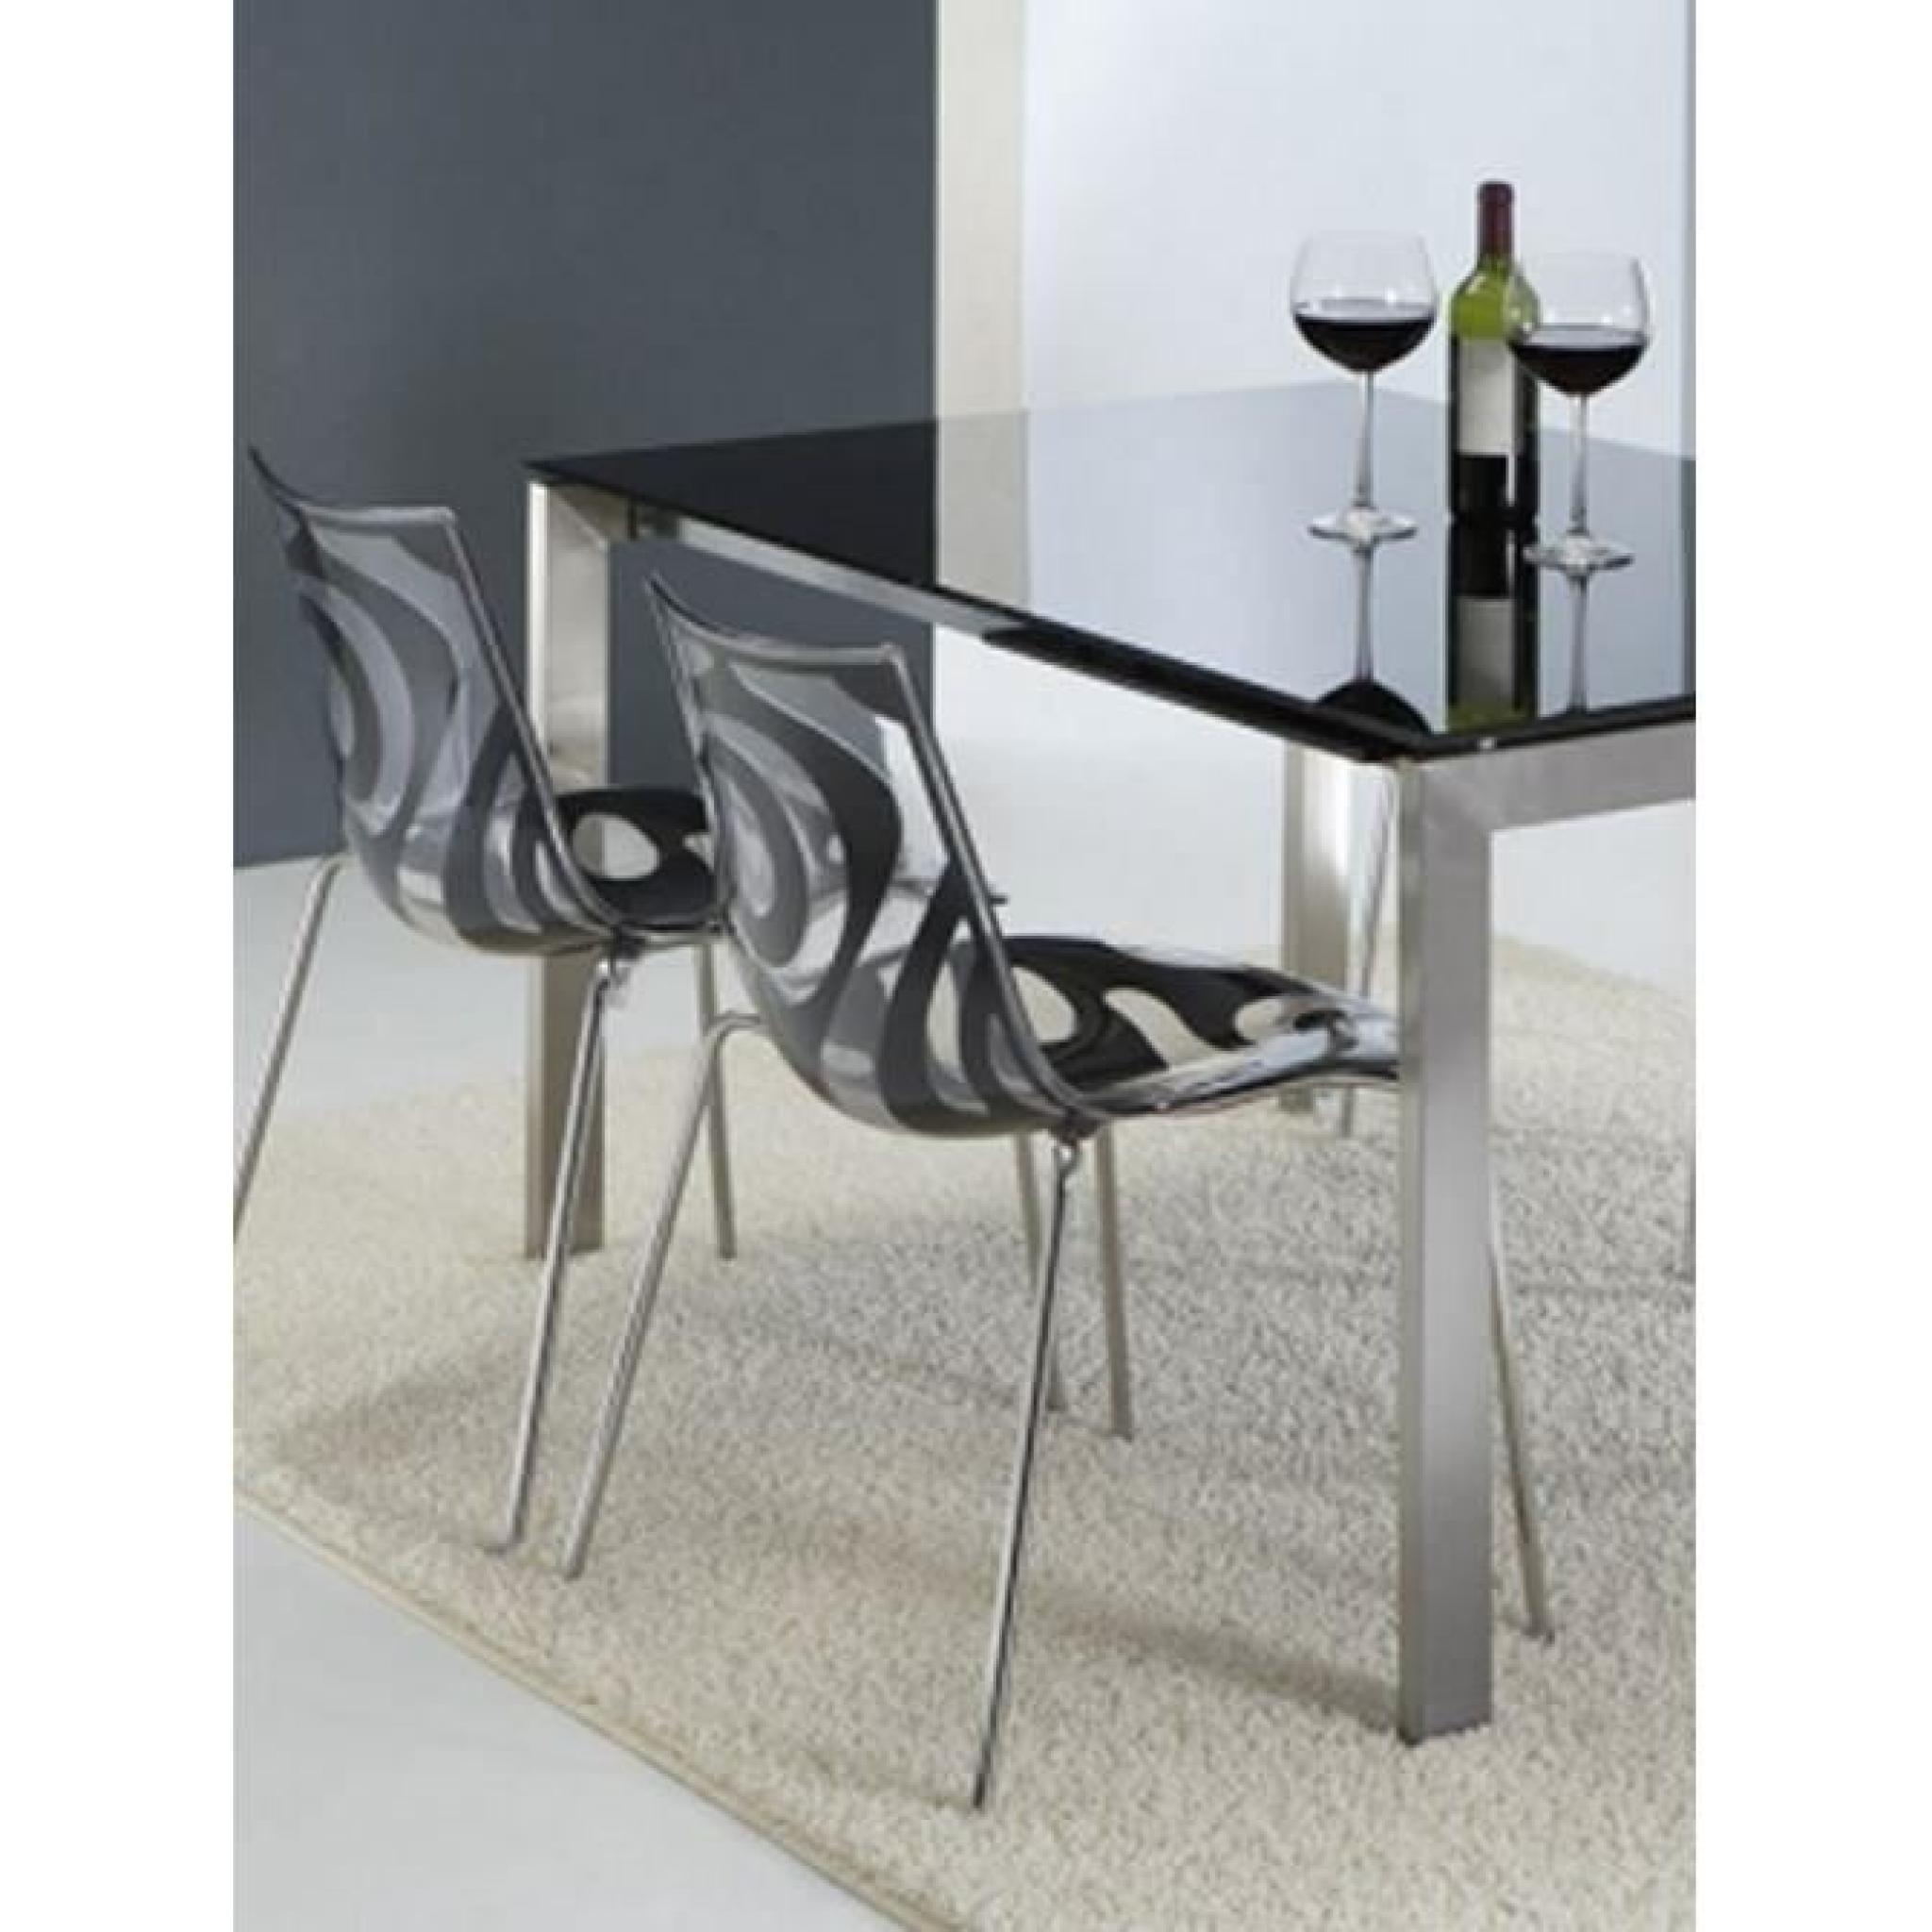 La chaise design TRIBAL qui grâce à ses lignes épurées et son look tendance s'intégrera parfaitement dans tout type d'intérieur. ...